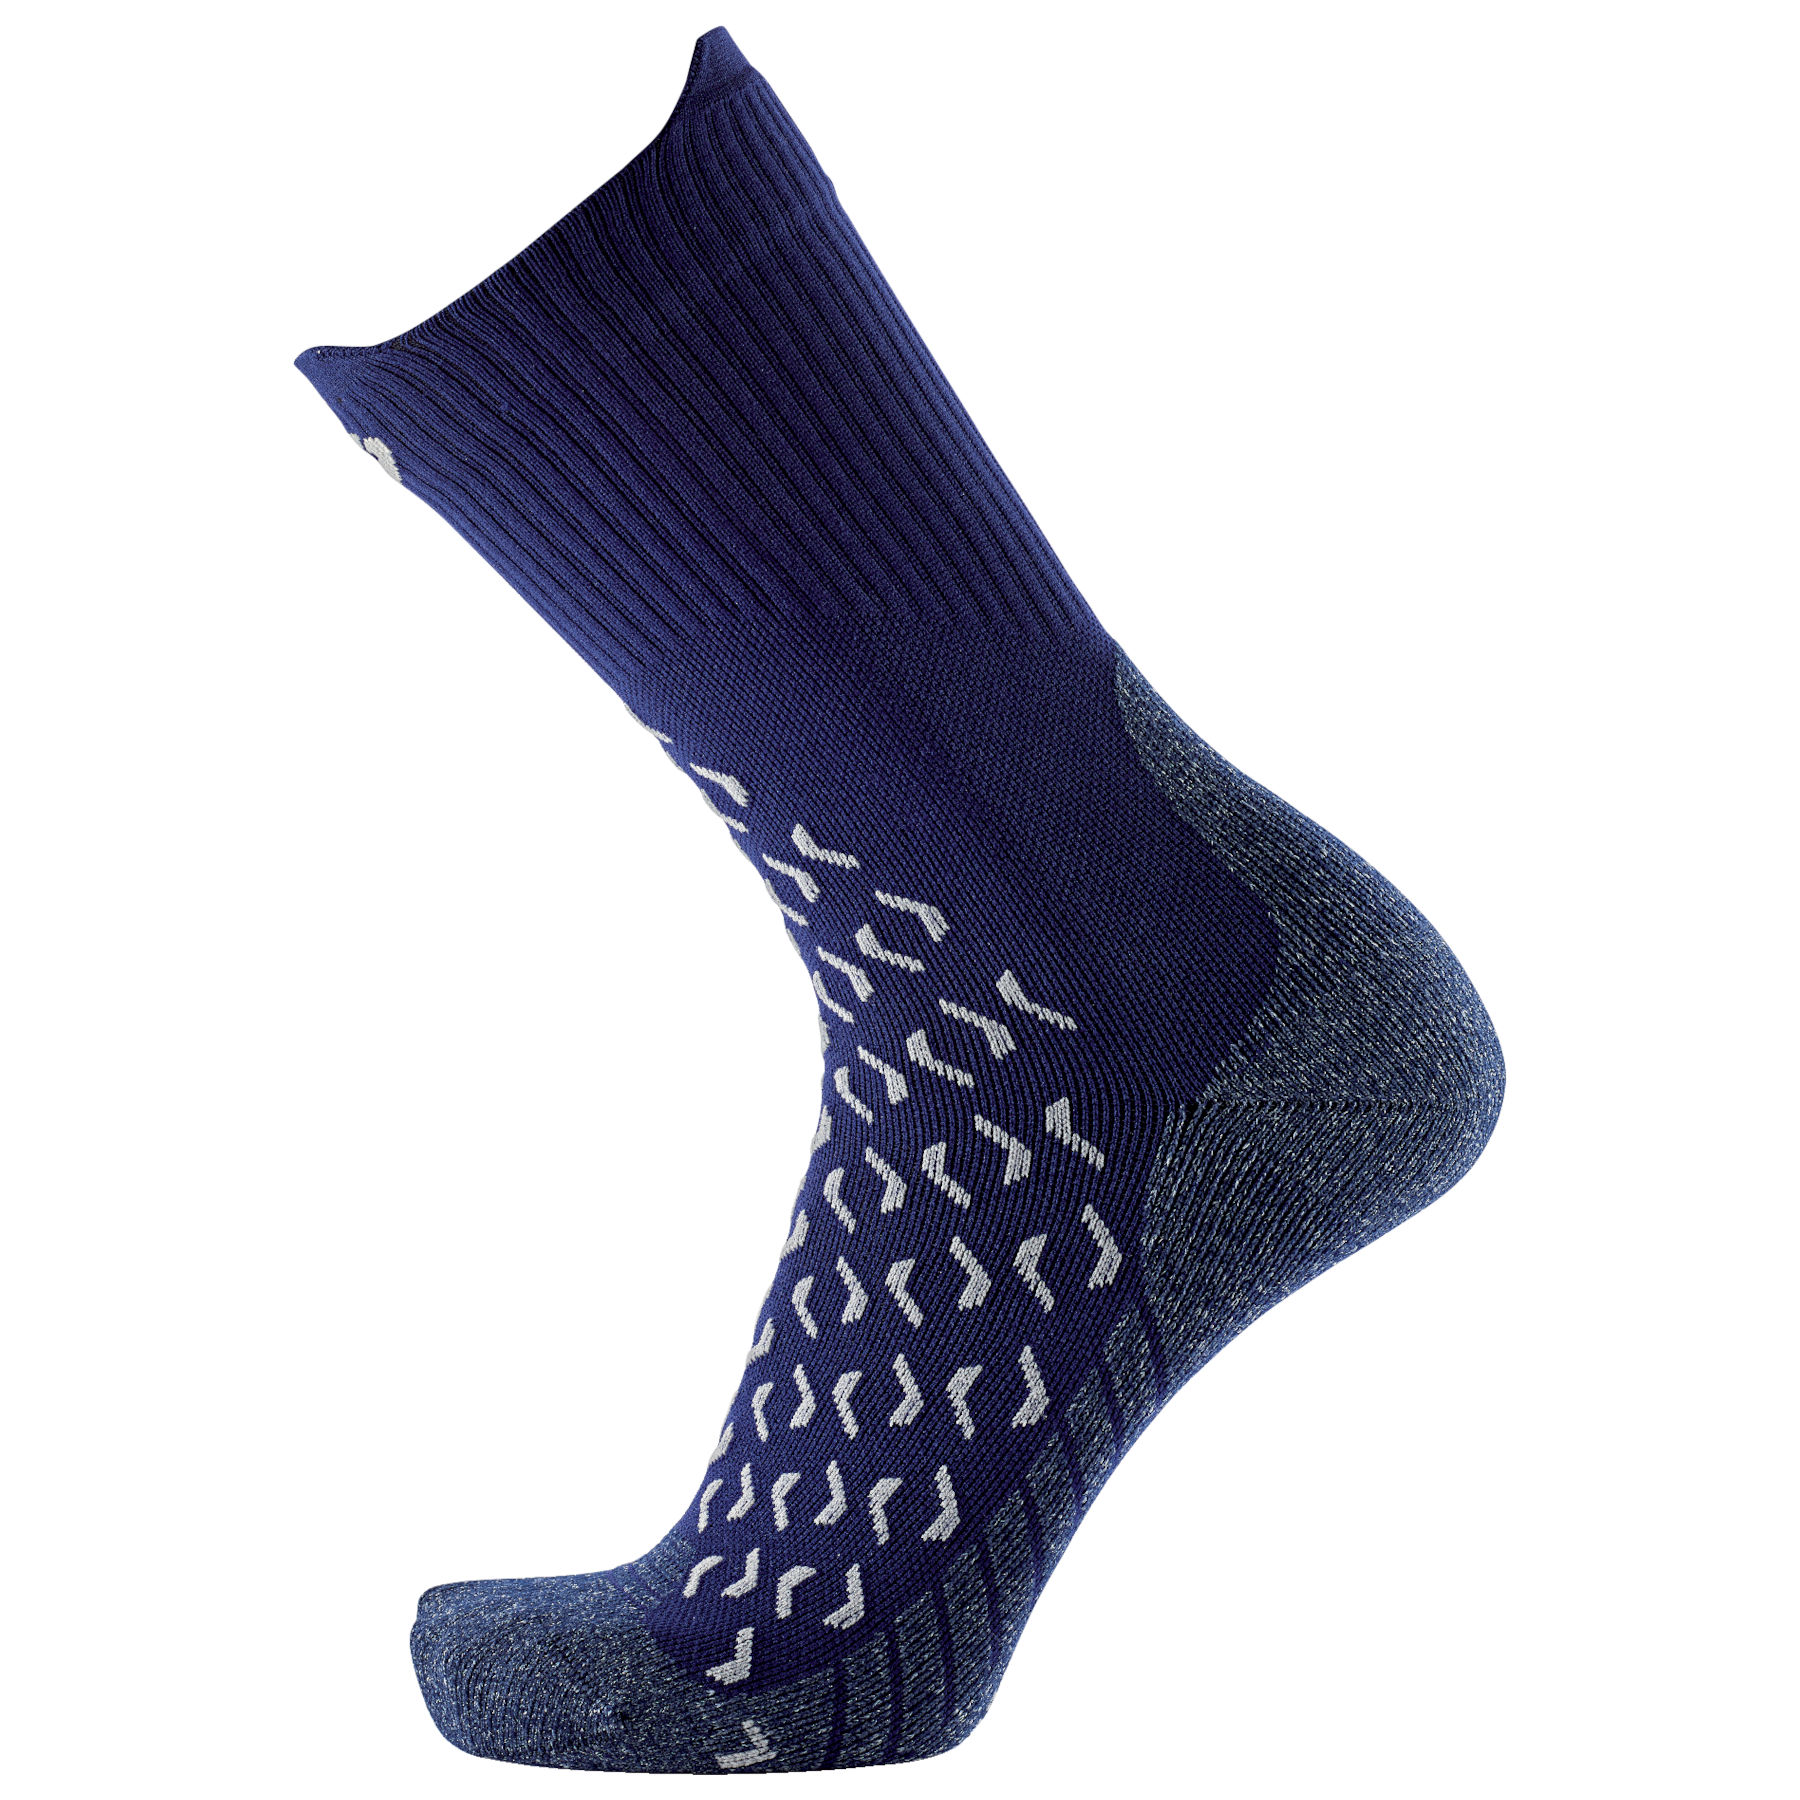 Produktbild von therm-ic Outdoor Ultra Cool Socken mittellang - blau/weiß